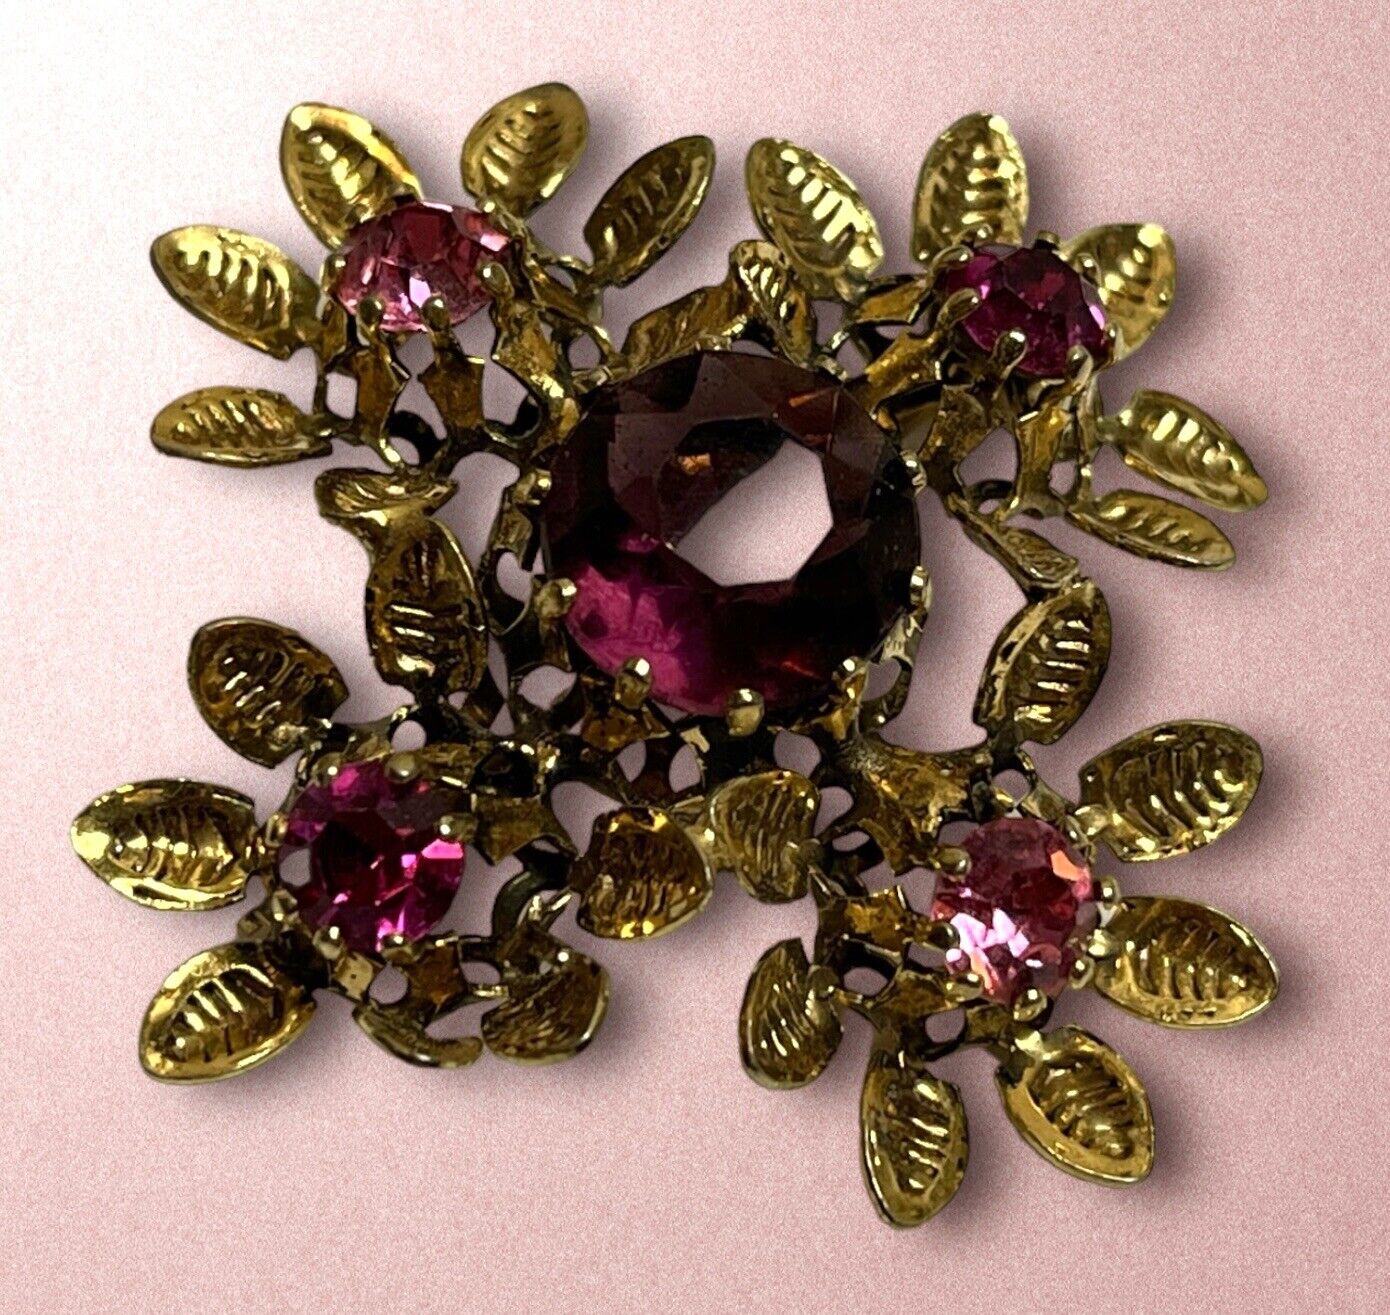 Vintage Signed Austria Pinks Purple Crystal Rhinestone Gold Tone Estate Brooch